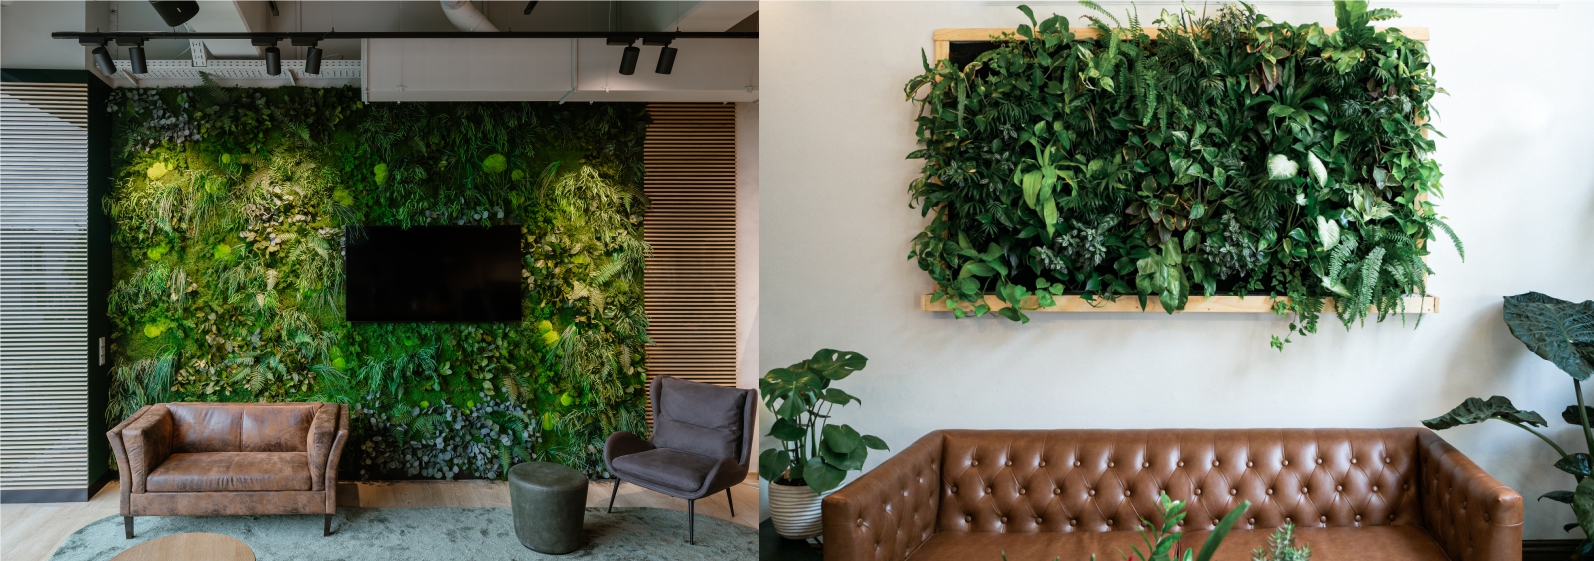 La différence entre un mur végétal et un mur végétal stabilisé